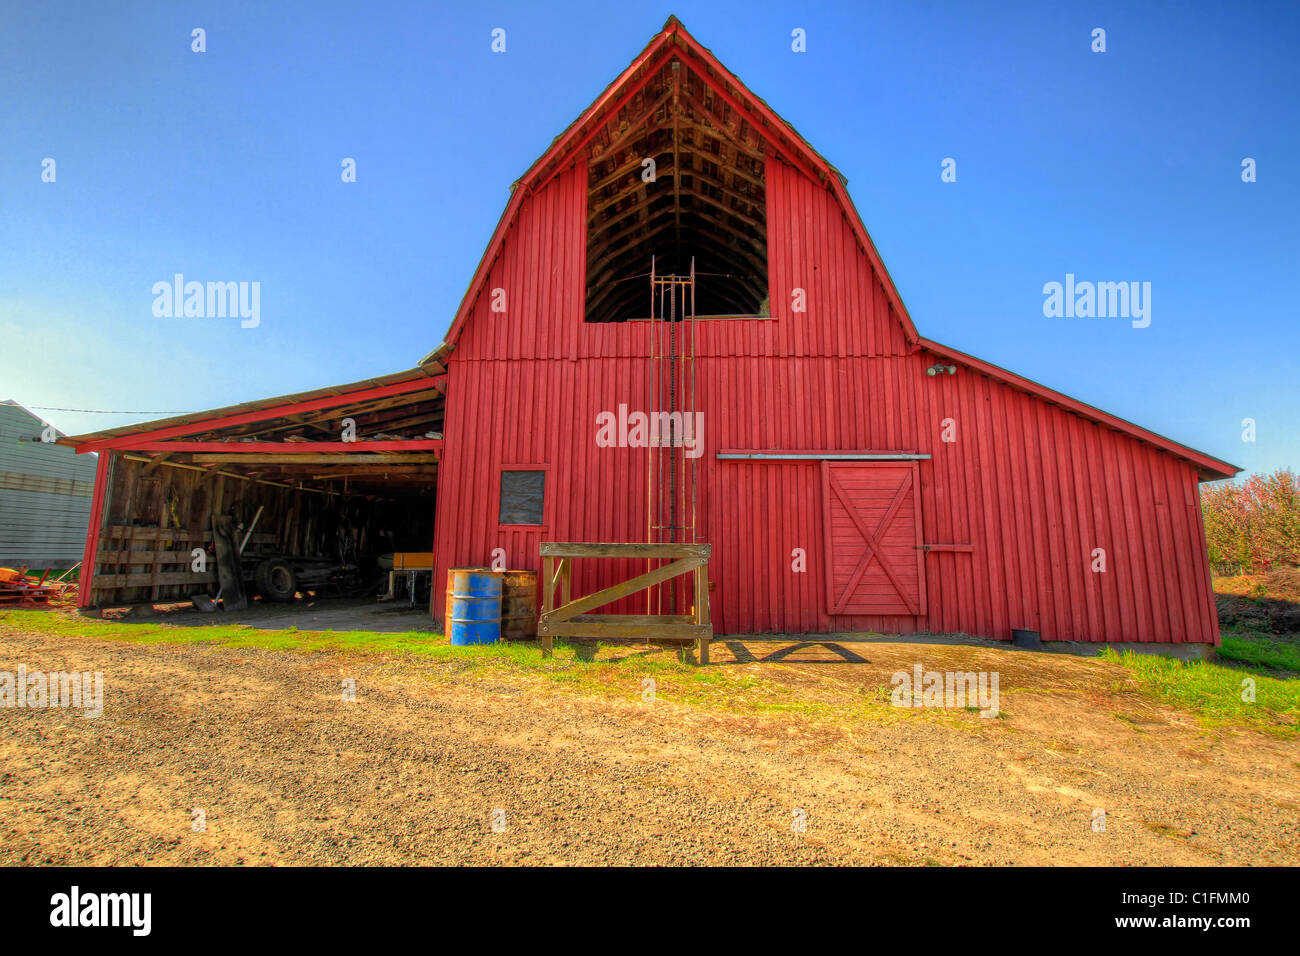 Rote Scheune in Oregon Landwirtschaft Ackerland Landschaft Stockfoto